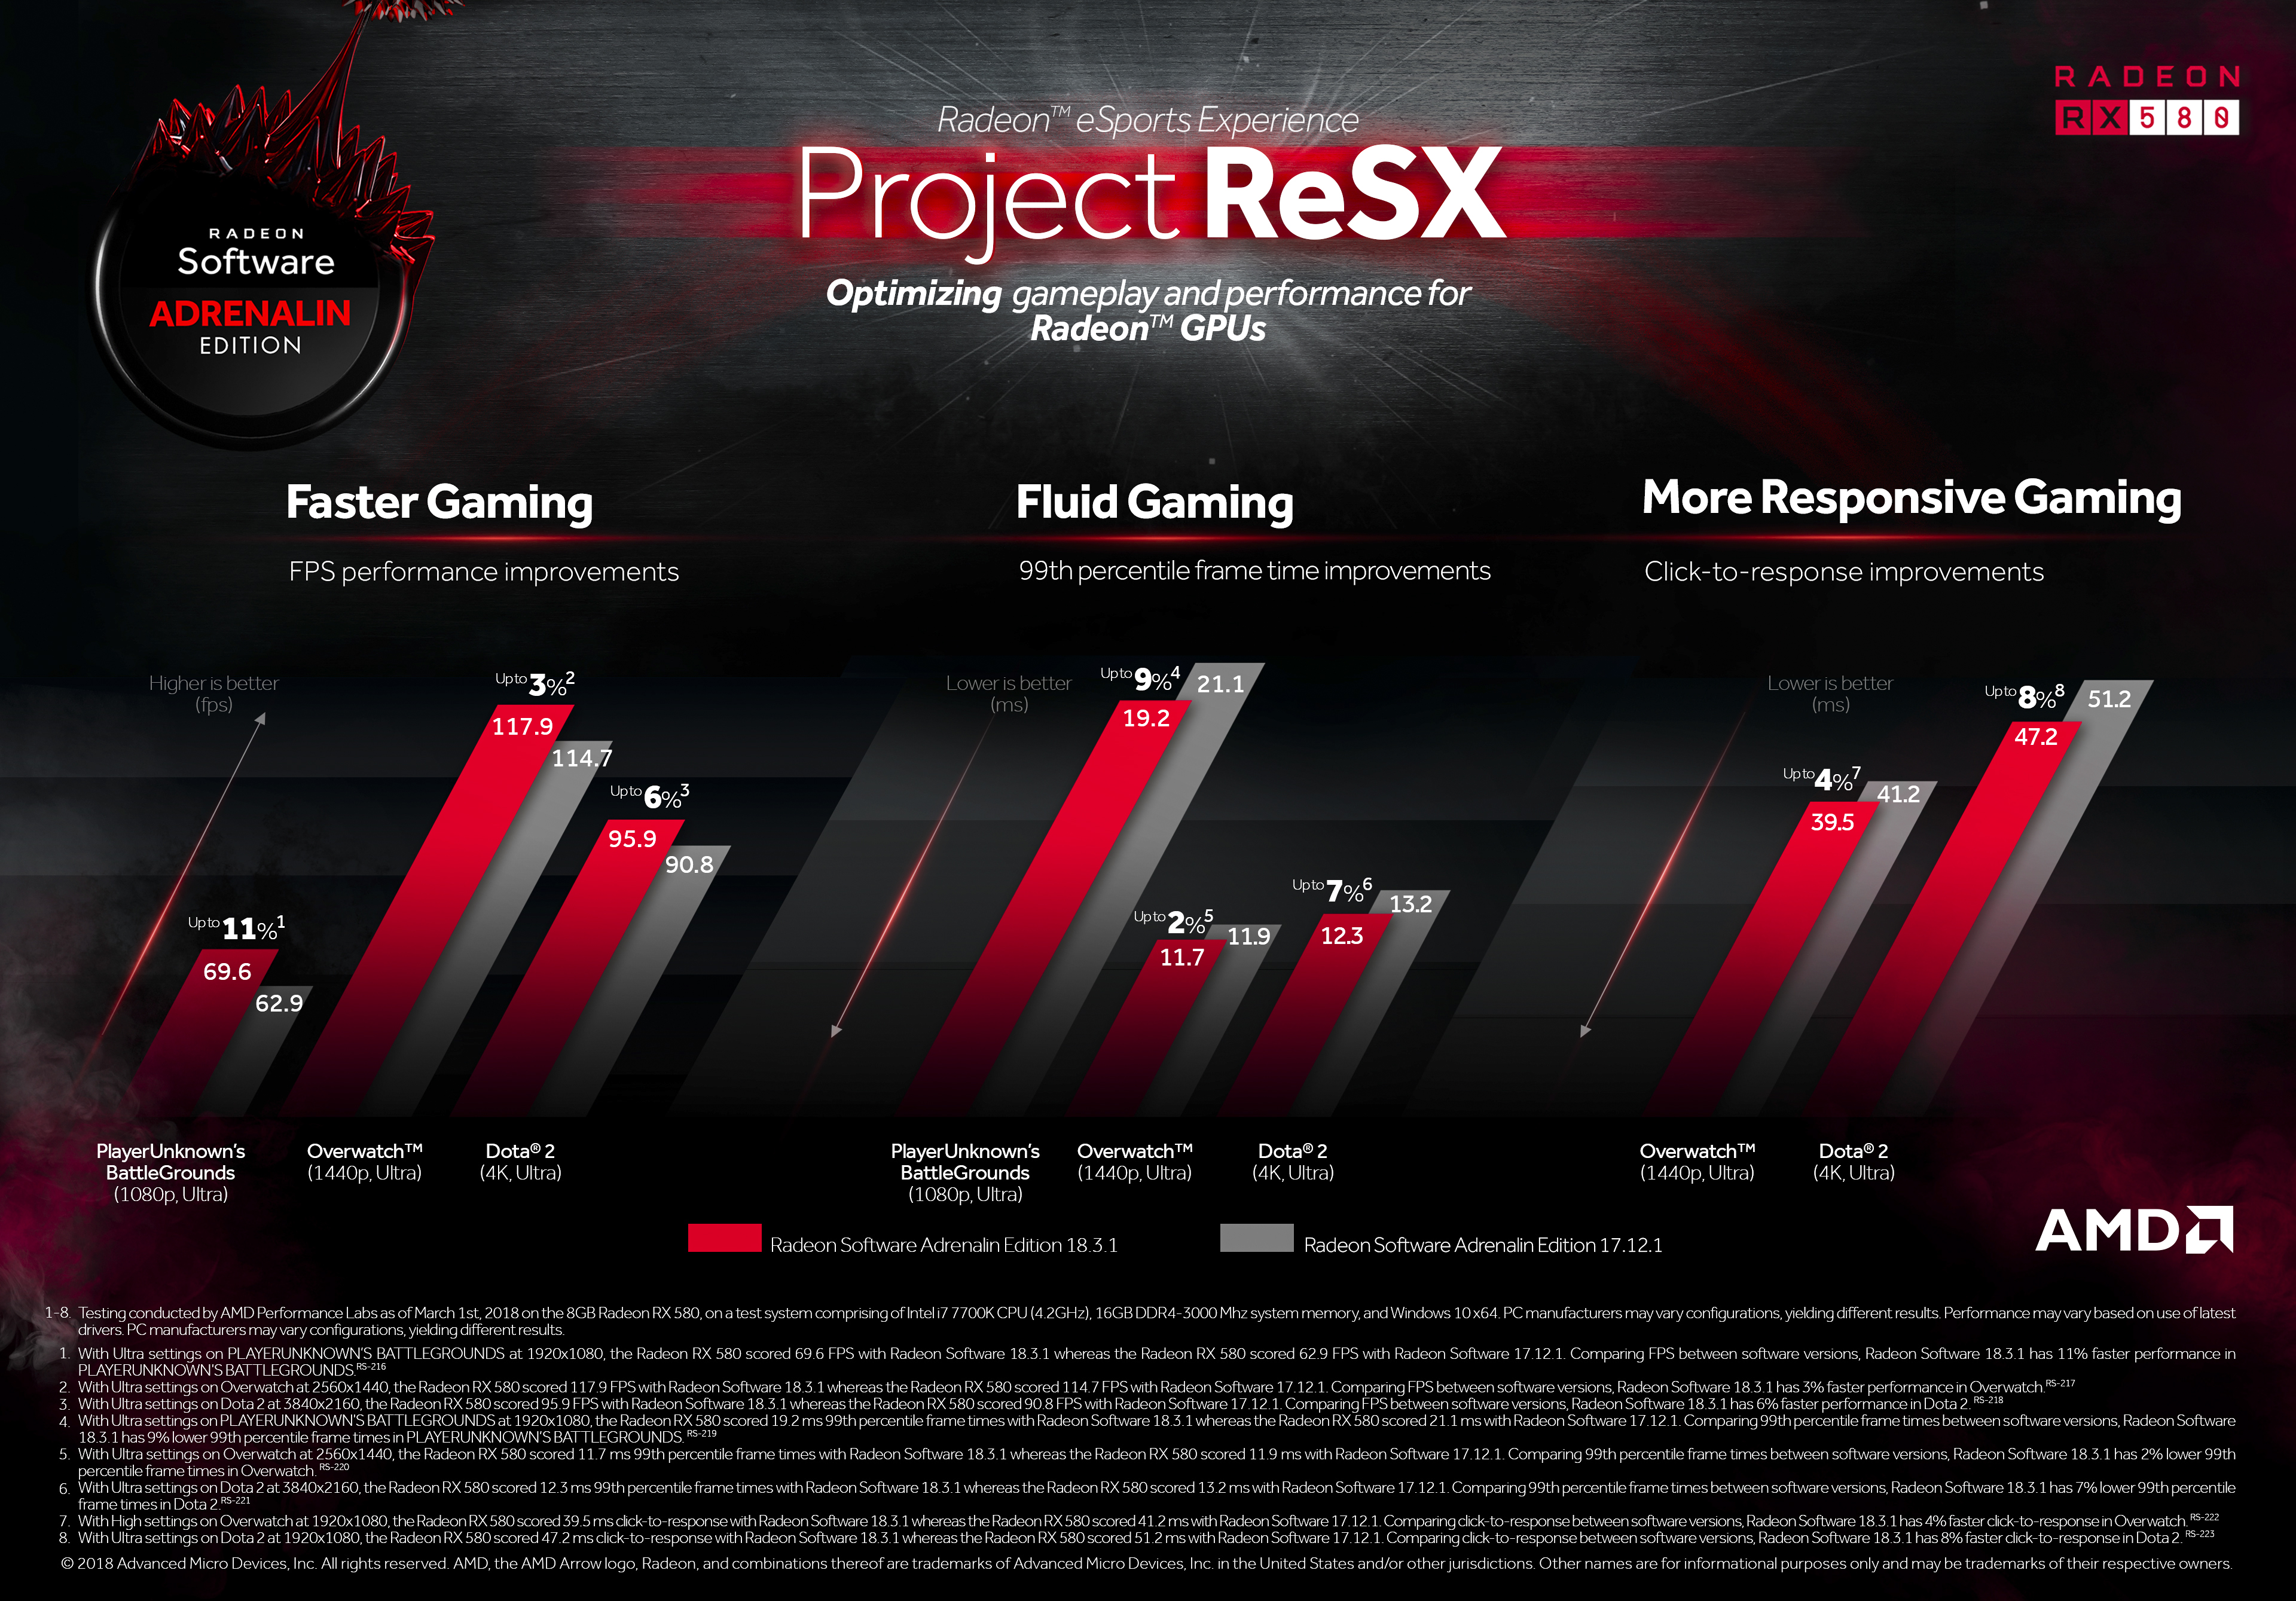 Radeon Software aduce performanțe mai rapide și mai fluide la cele mai populare titluri eSports cu Project ReSX de la AMD